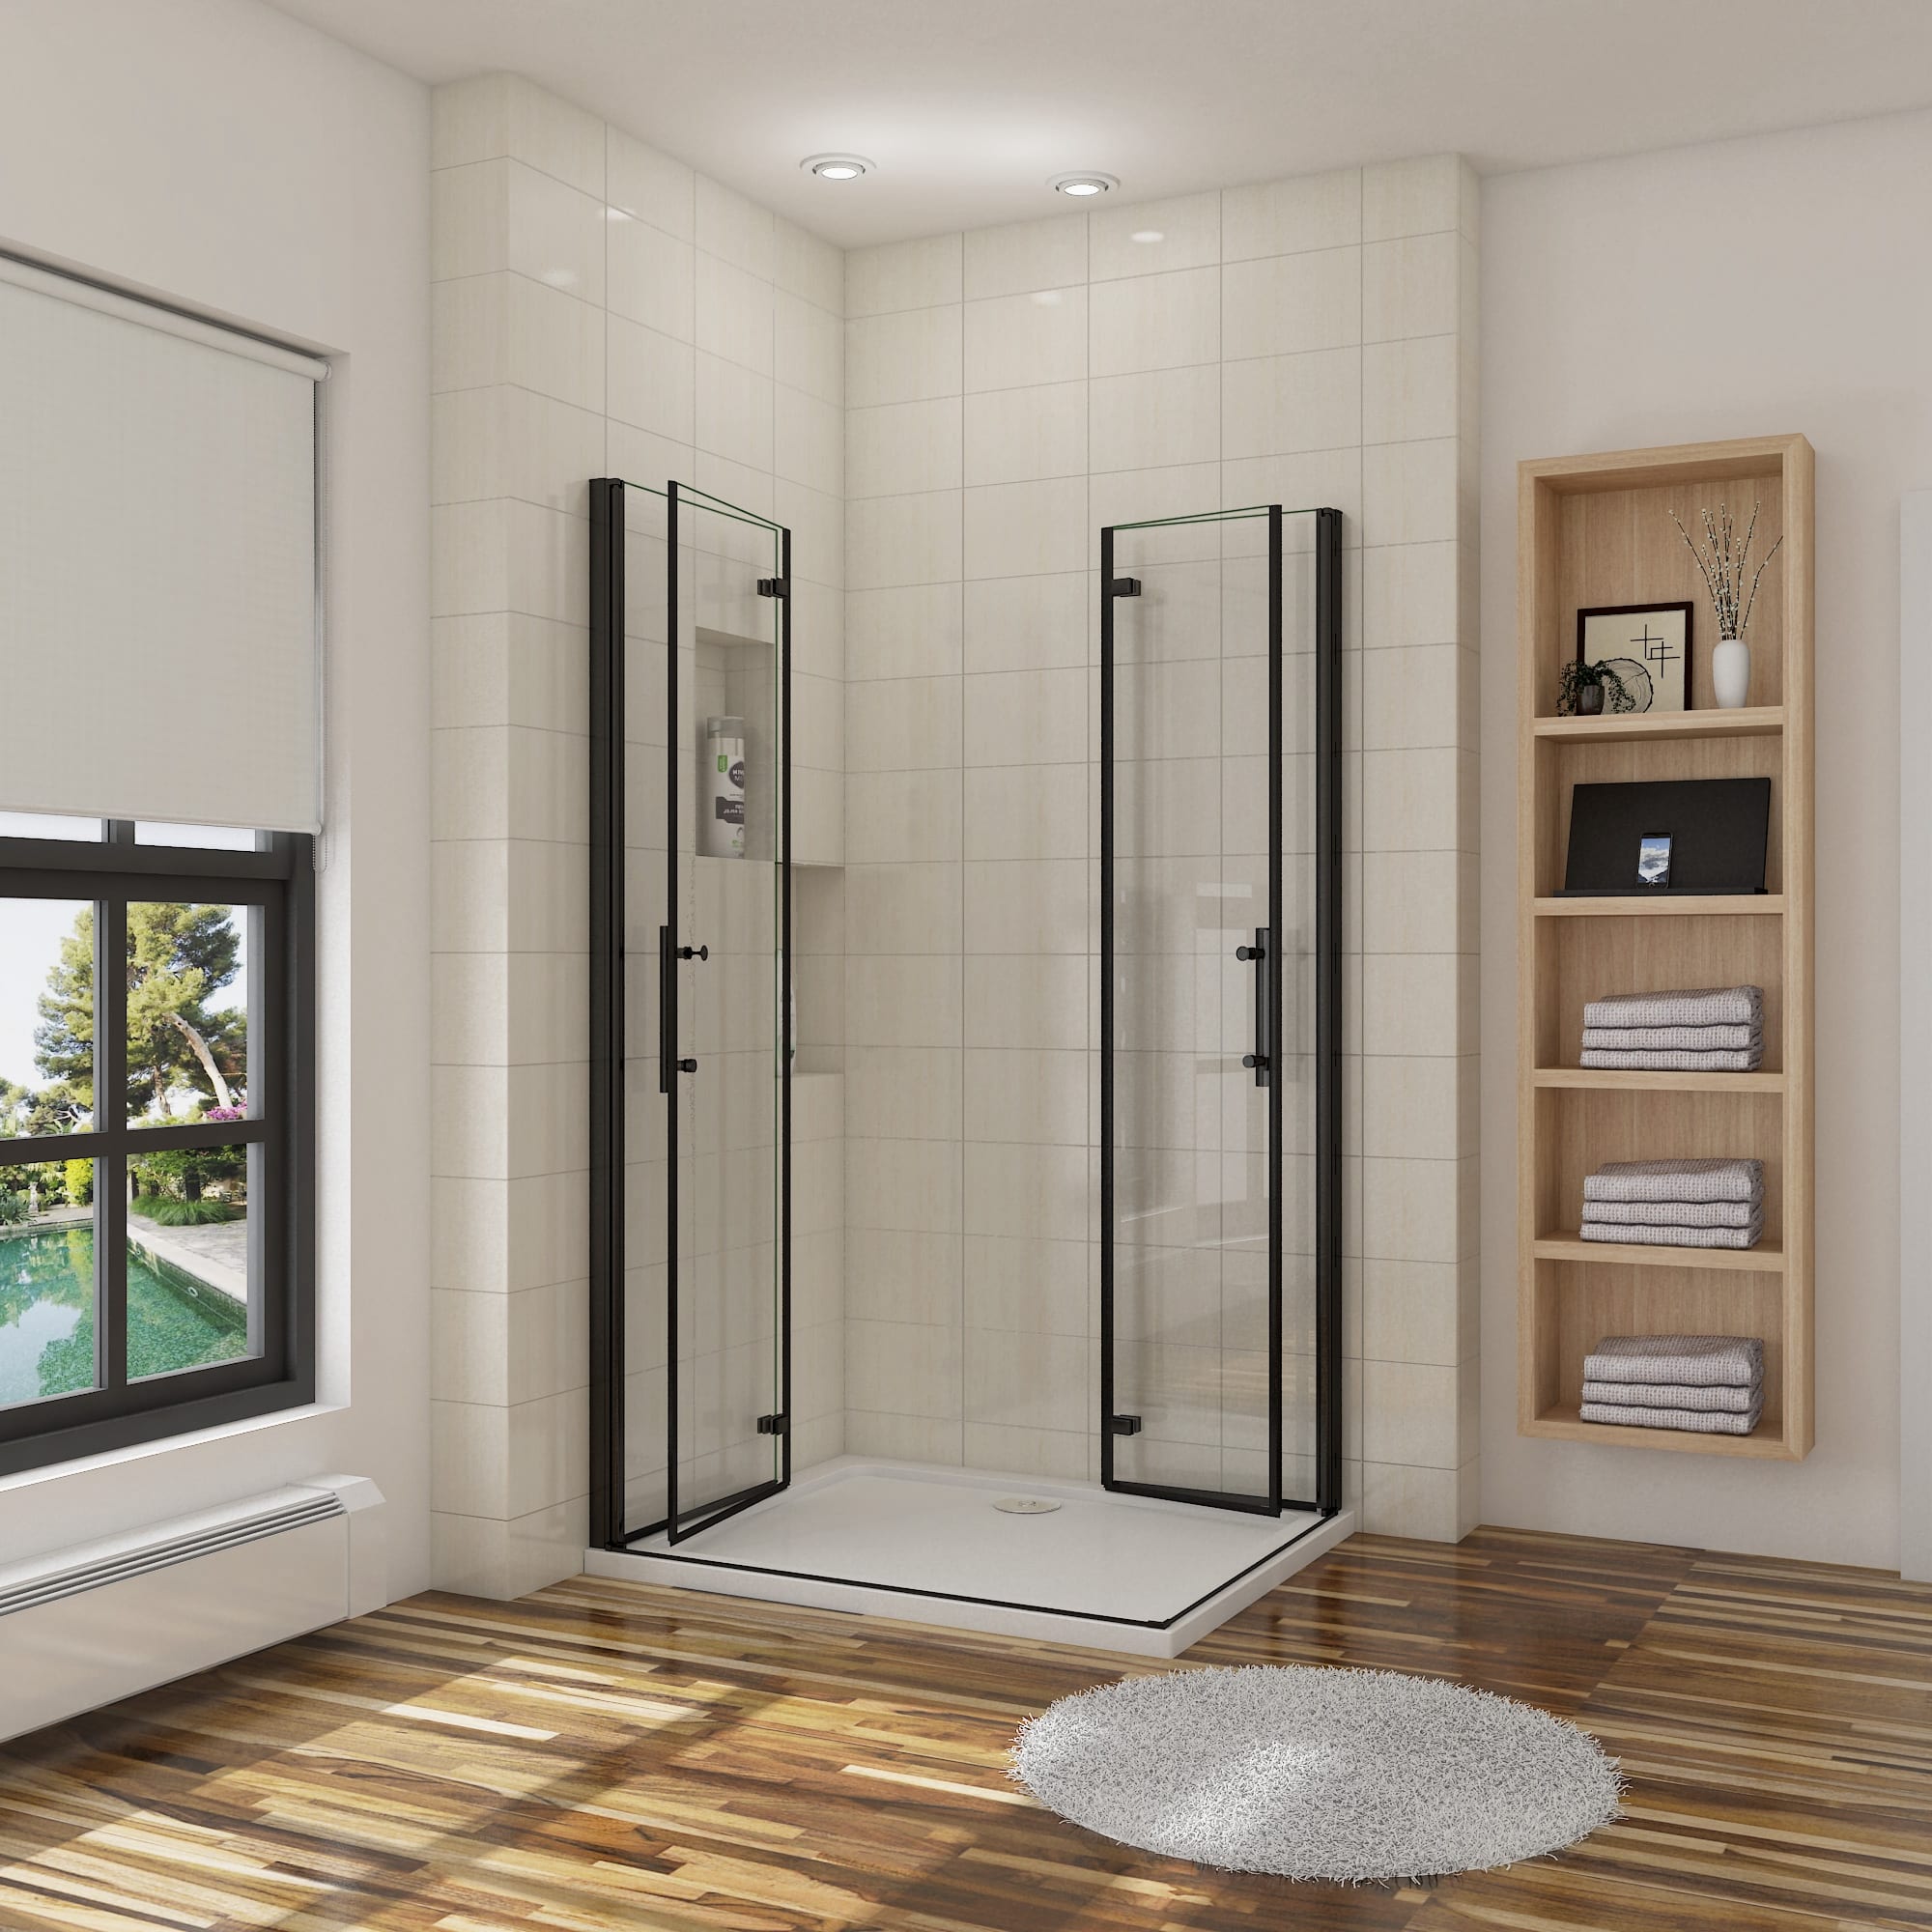 Organizador colgante Shower Door para puerta ducha con ganchos